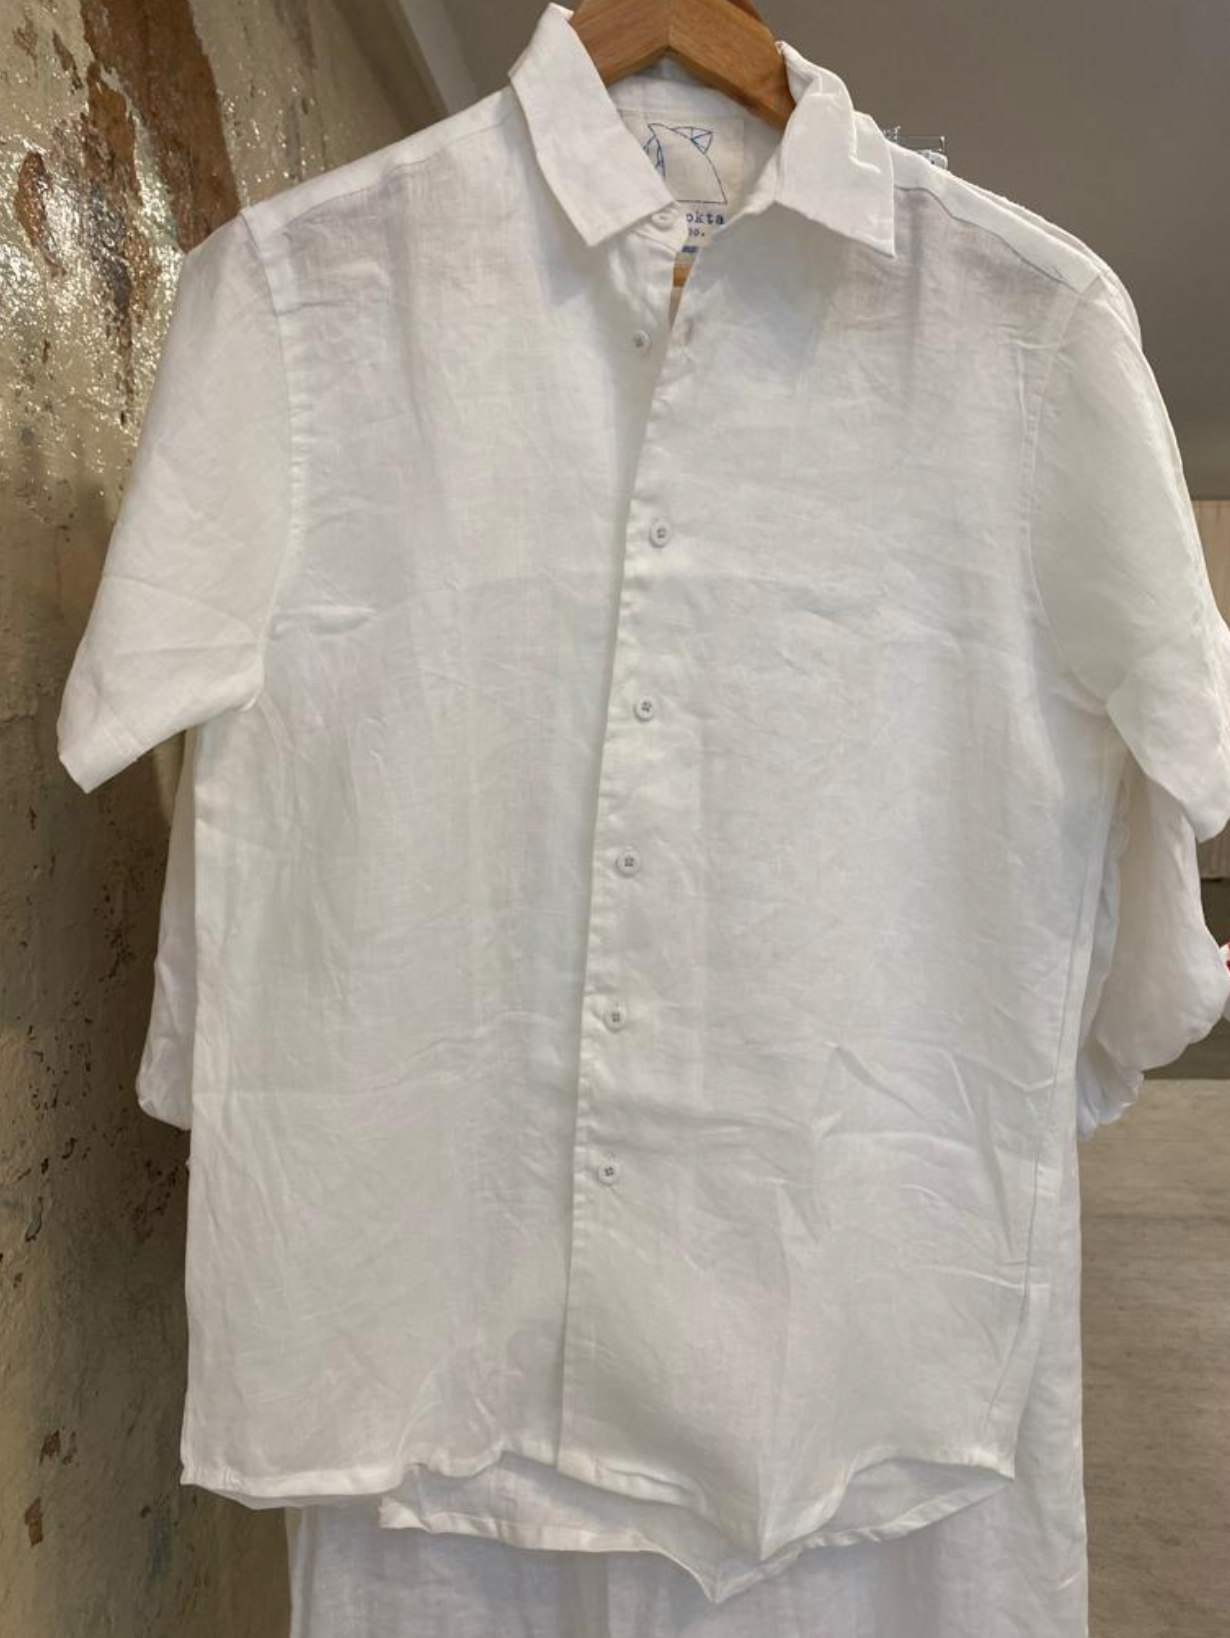 SALE Jack Linen Shirt - Short Sleeve